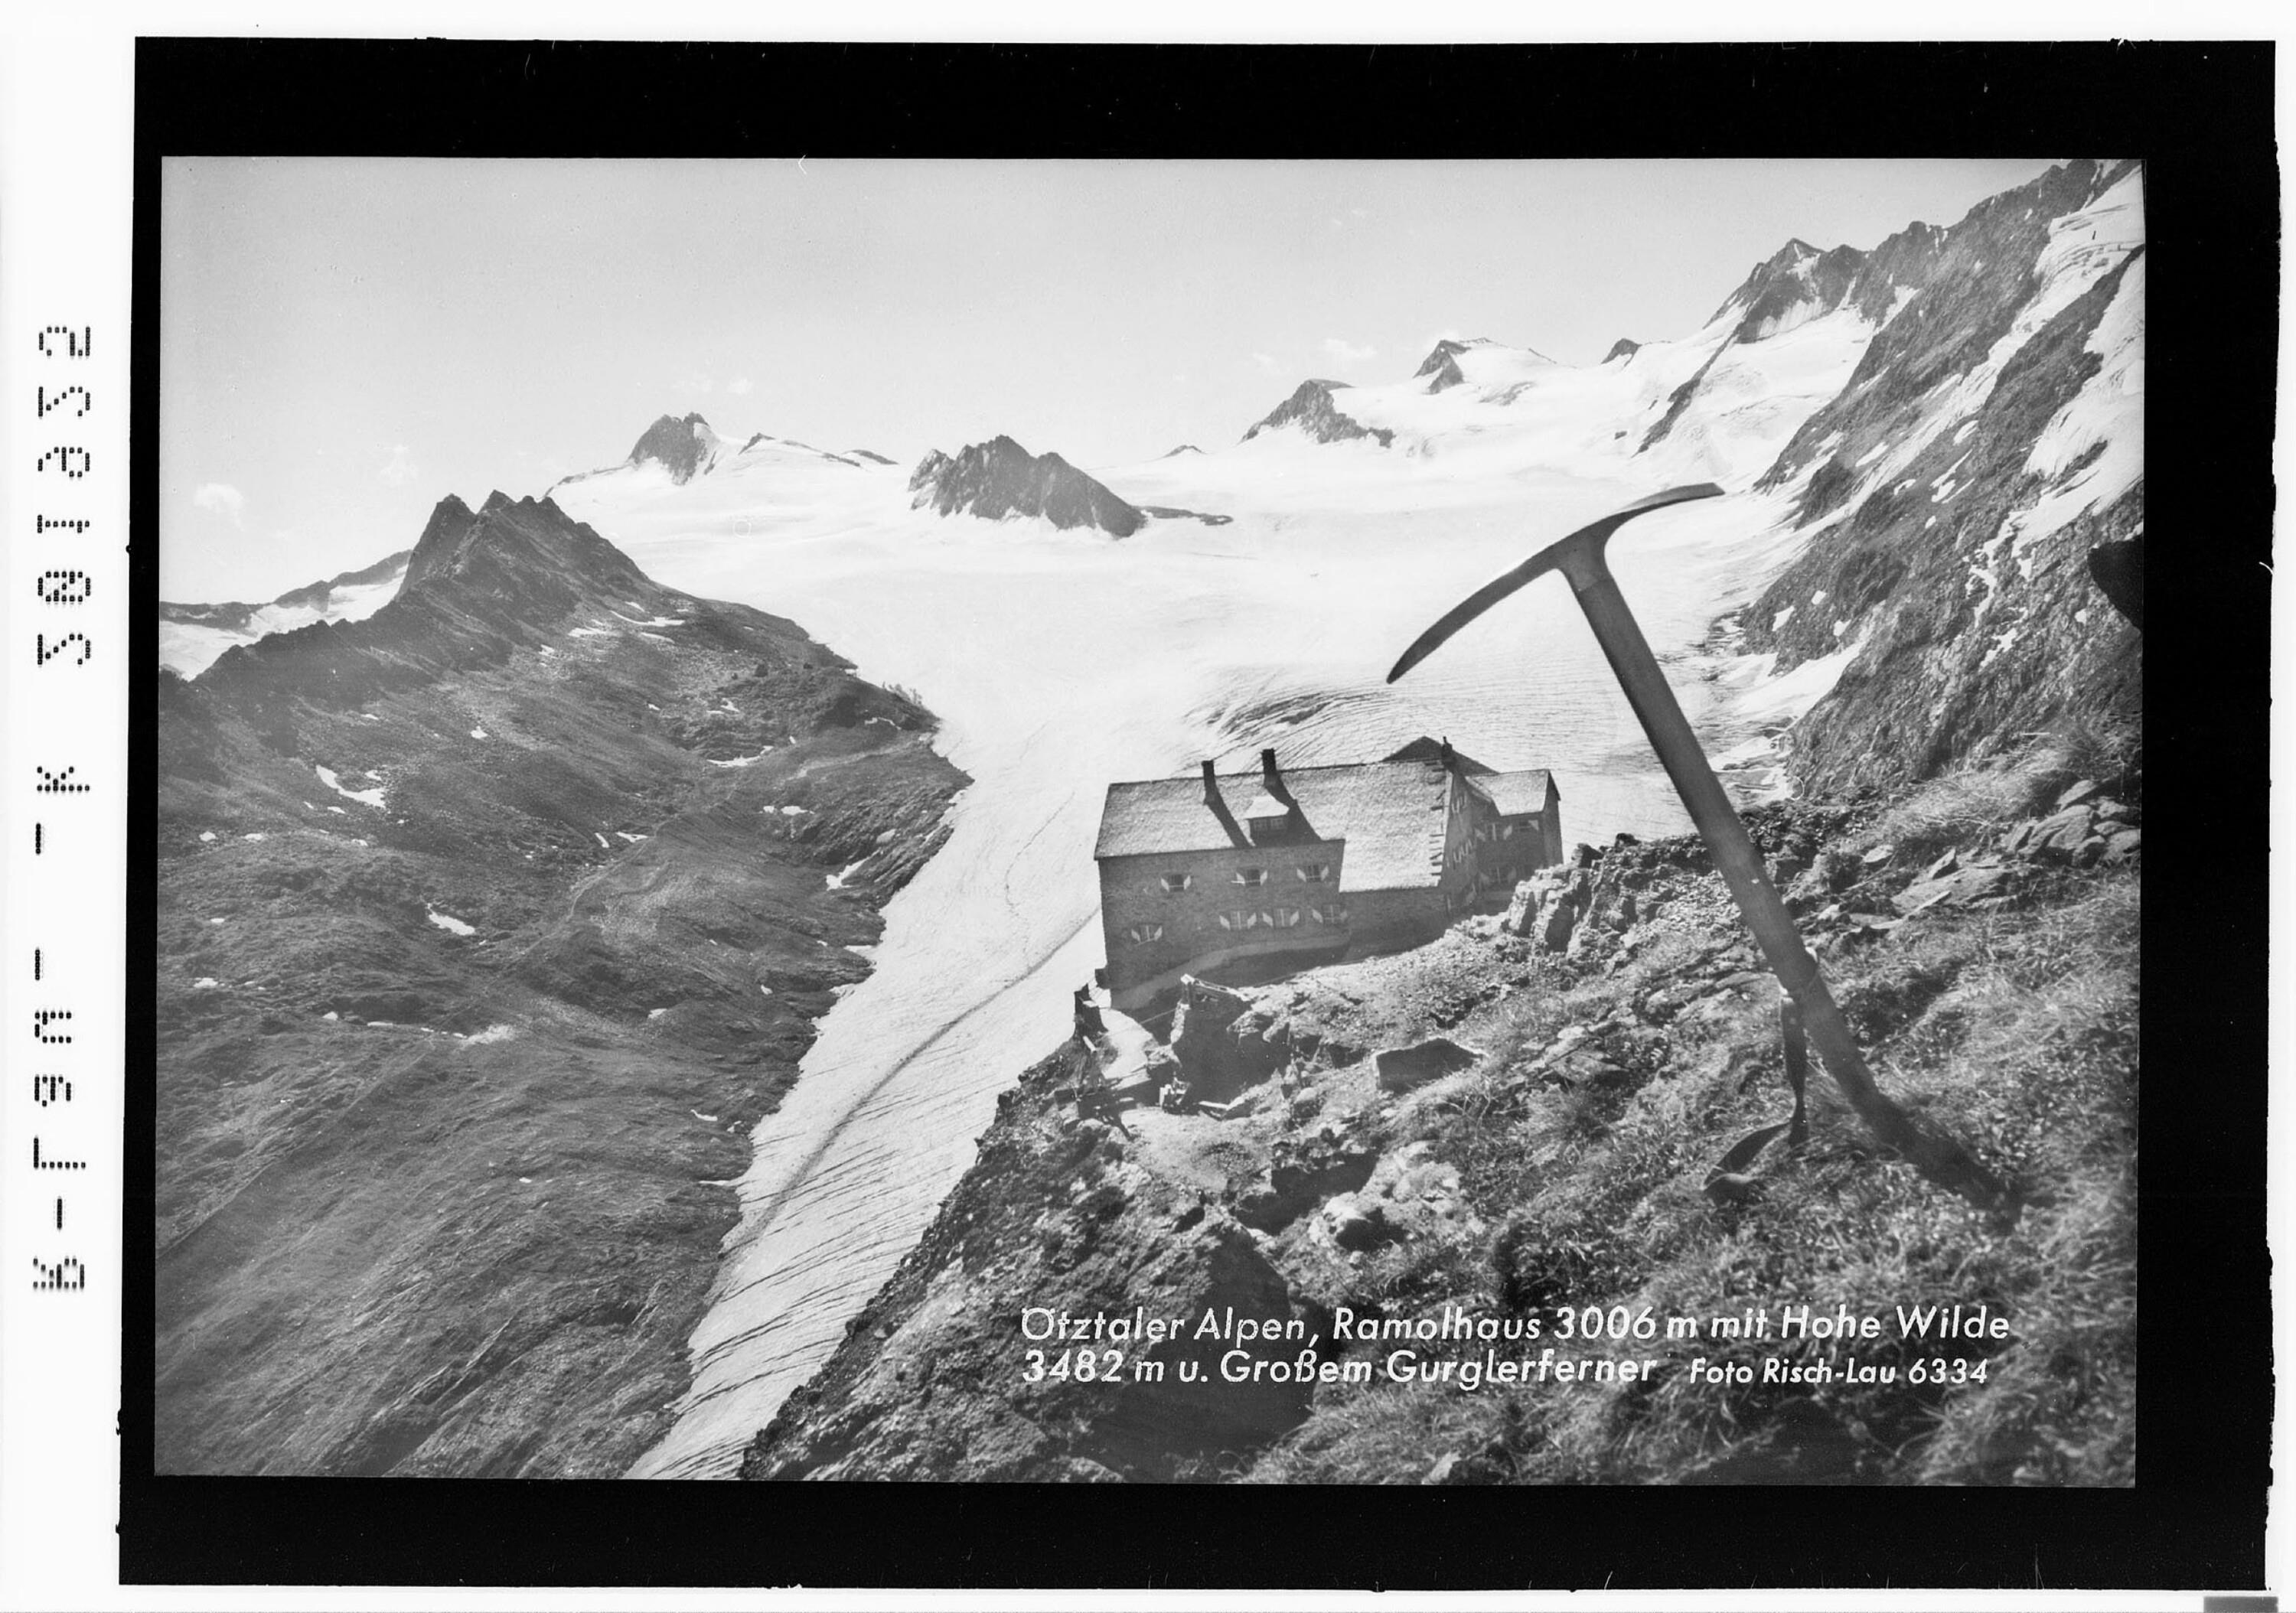 Ötztaler Alpen / Ramolhaus 3006 m mit Hohe Wilde 3482 m und Grossem Gurglerferner></div>


    <hr>
    <div class=